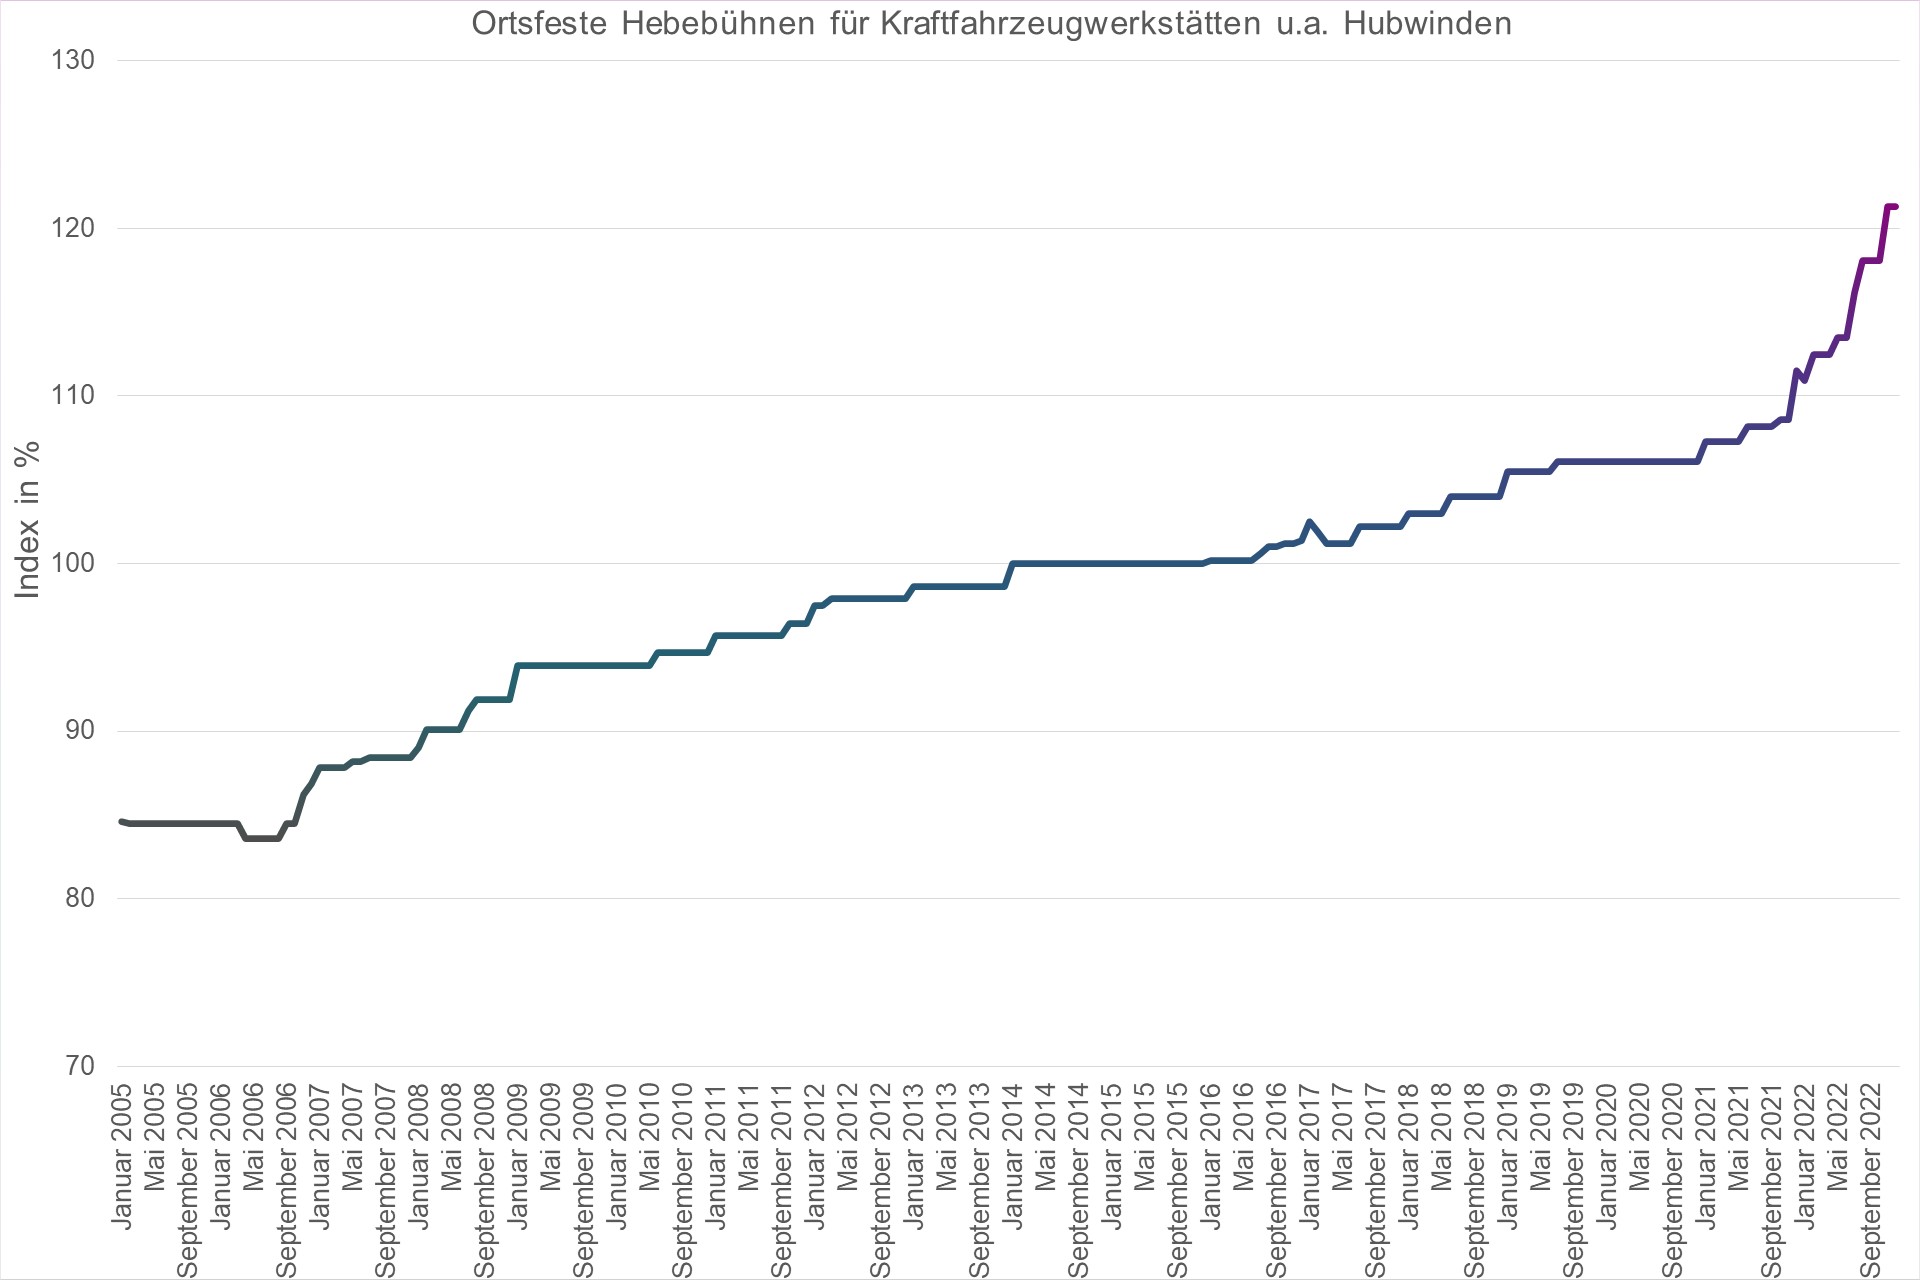 Grafik Preisindex Ortsfeste Hebebühnen für Kraftfahrzeugwerkstätten u.a. Hubwinden